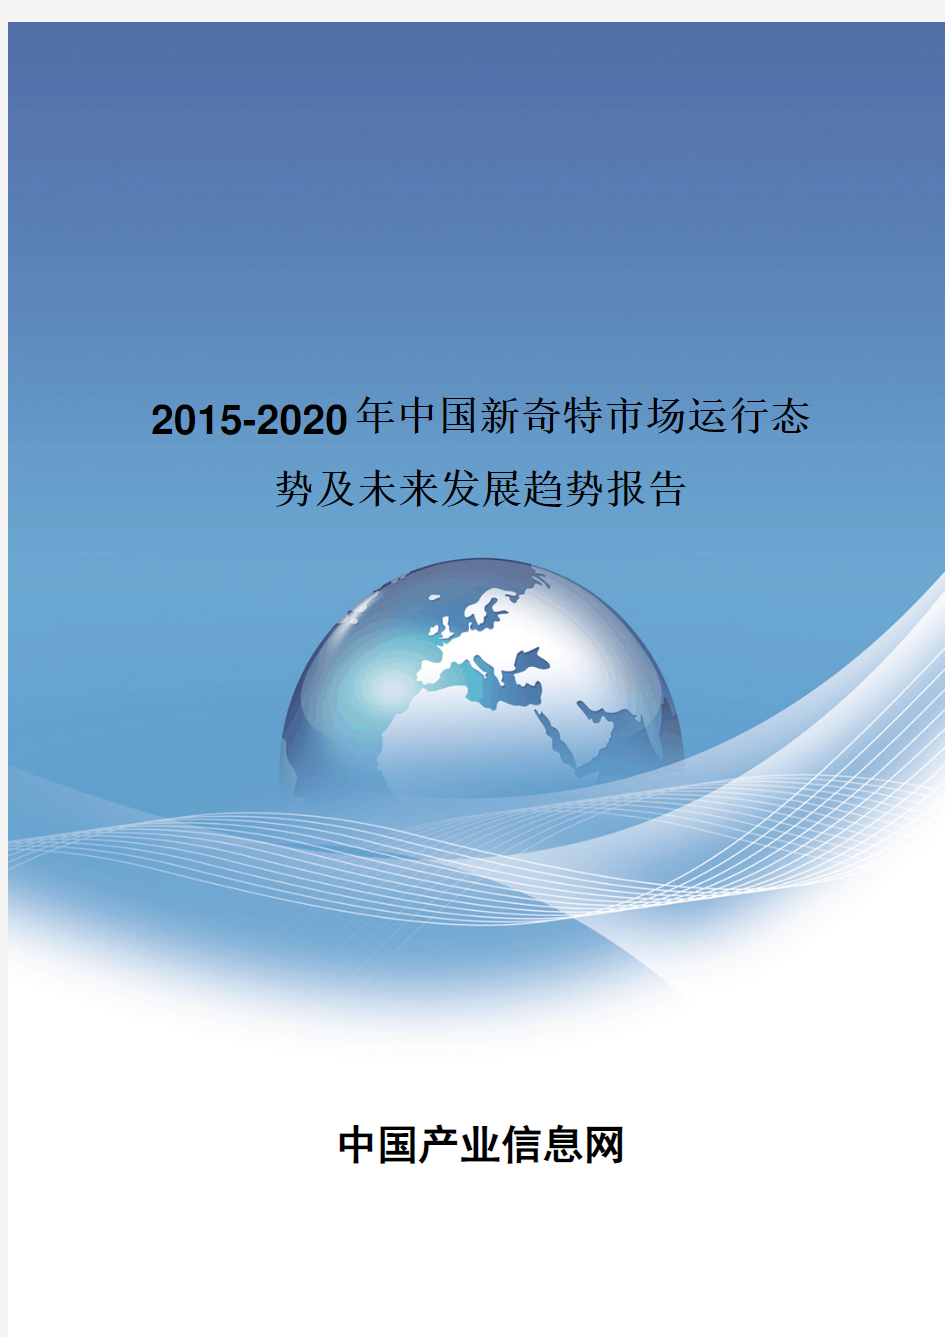 2015-2020年中国新奇特市场运行态势报告